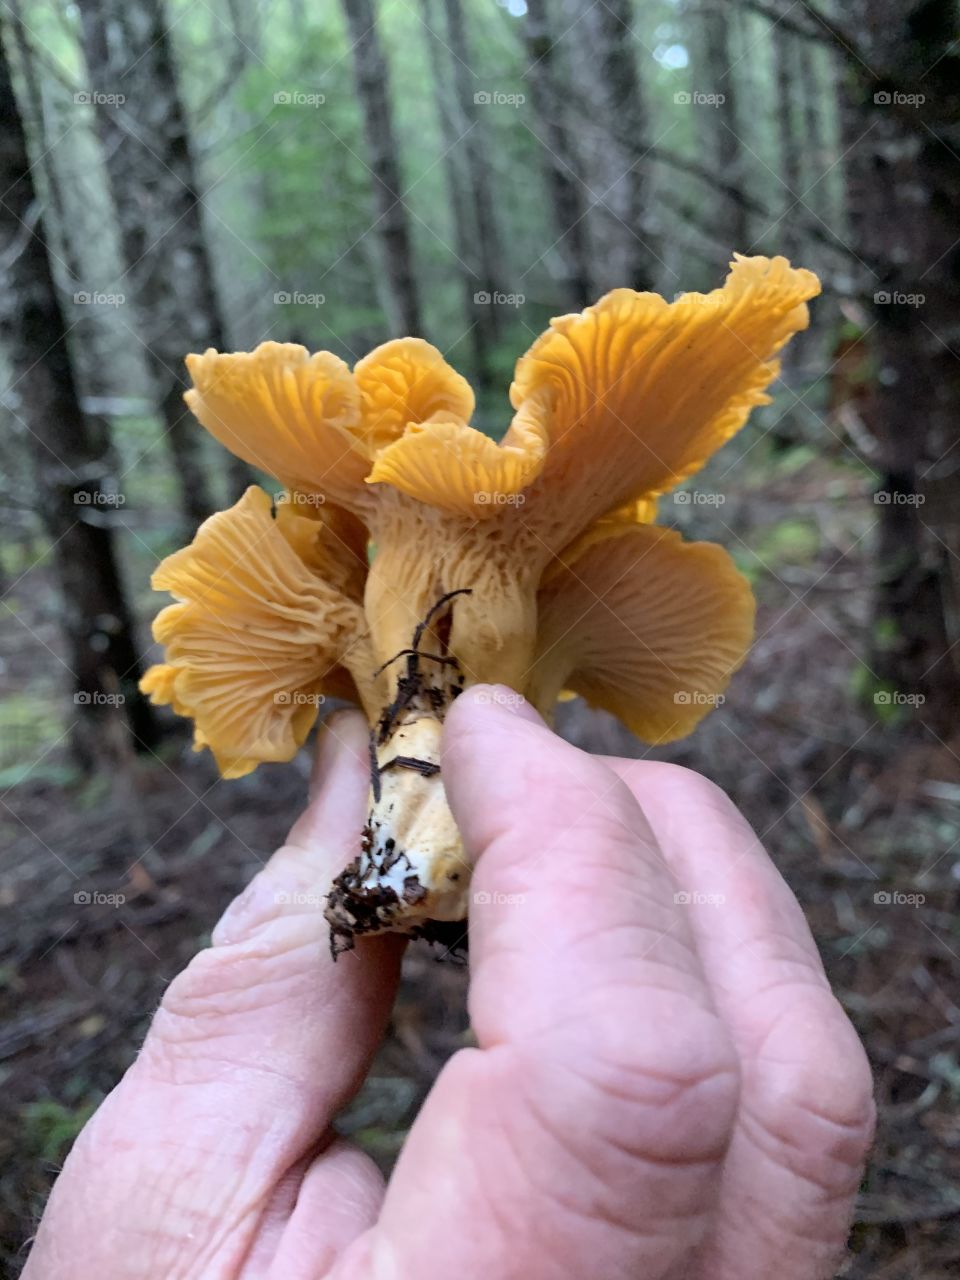 Picking wild mushrooms 